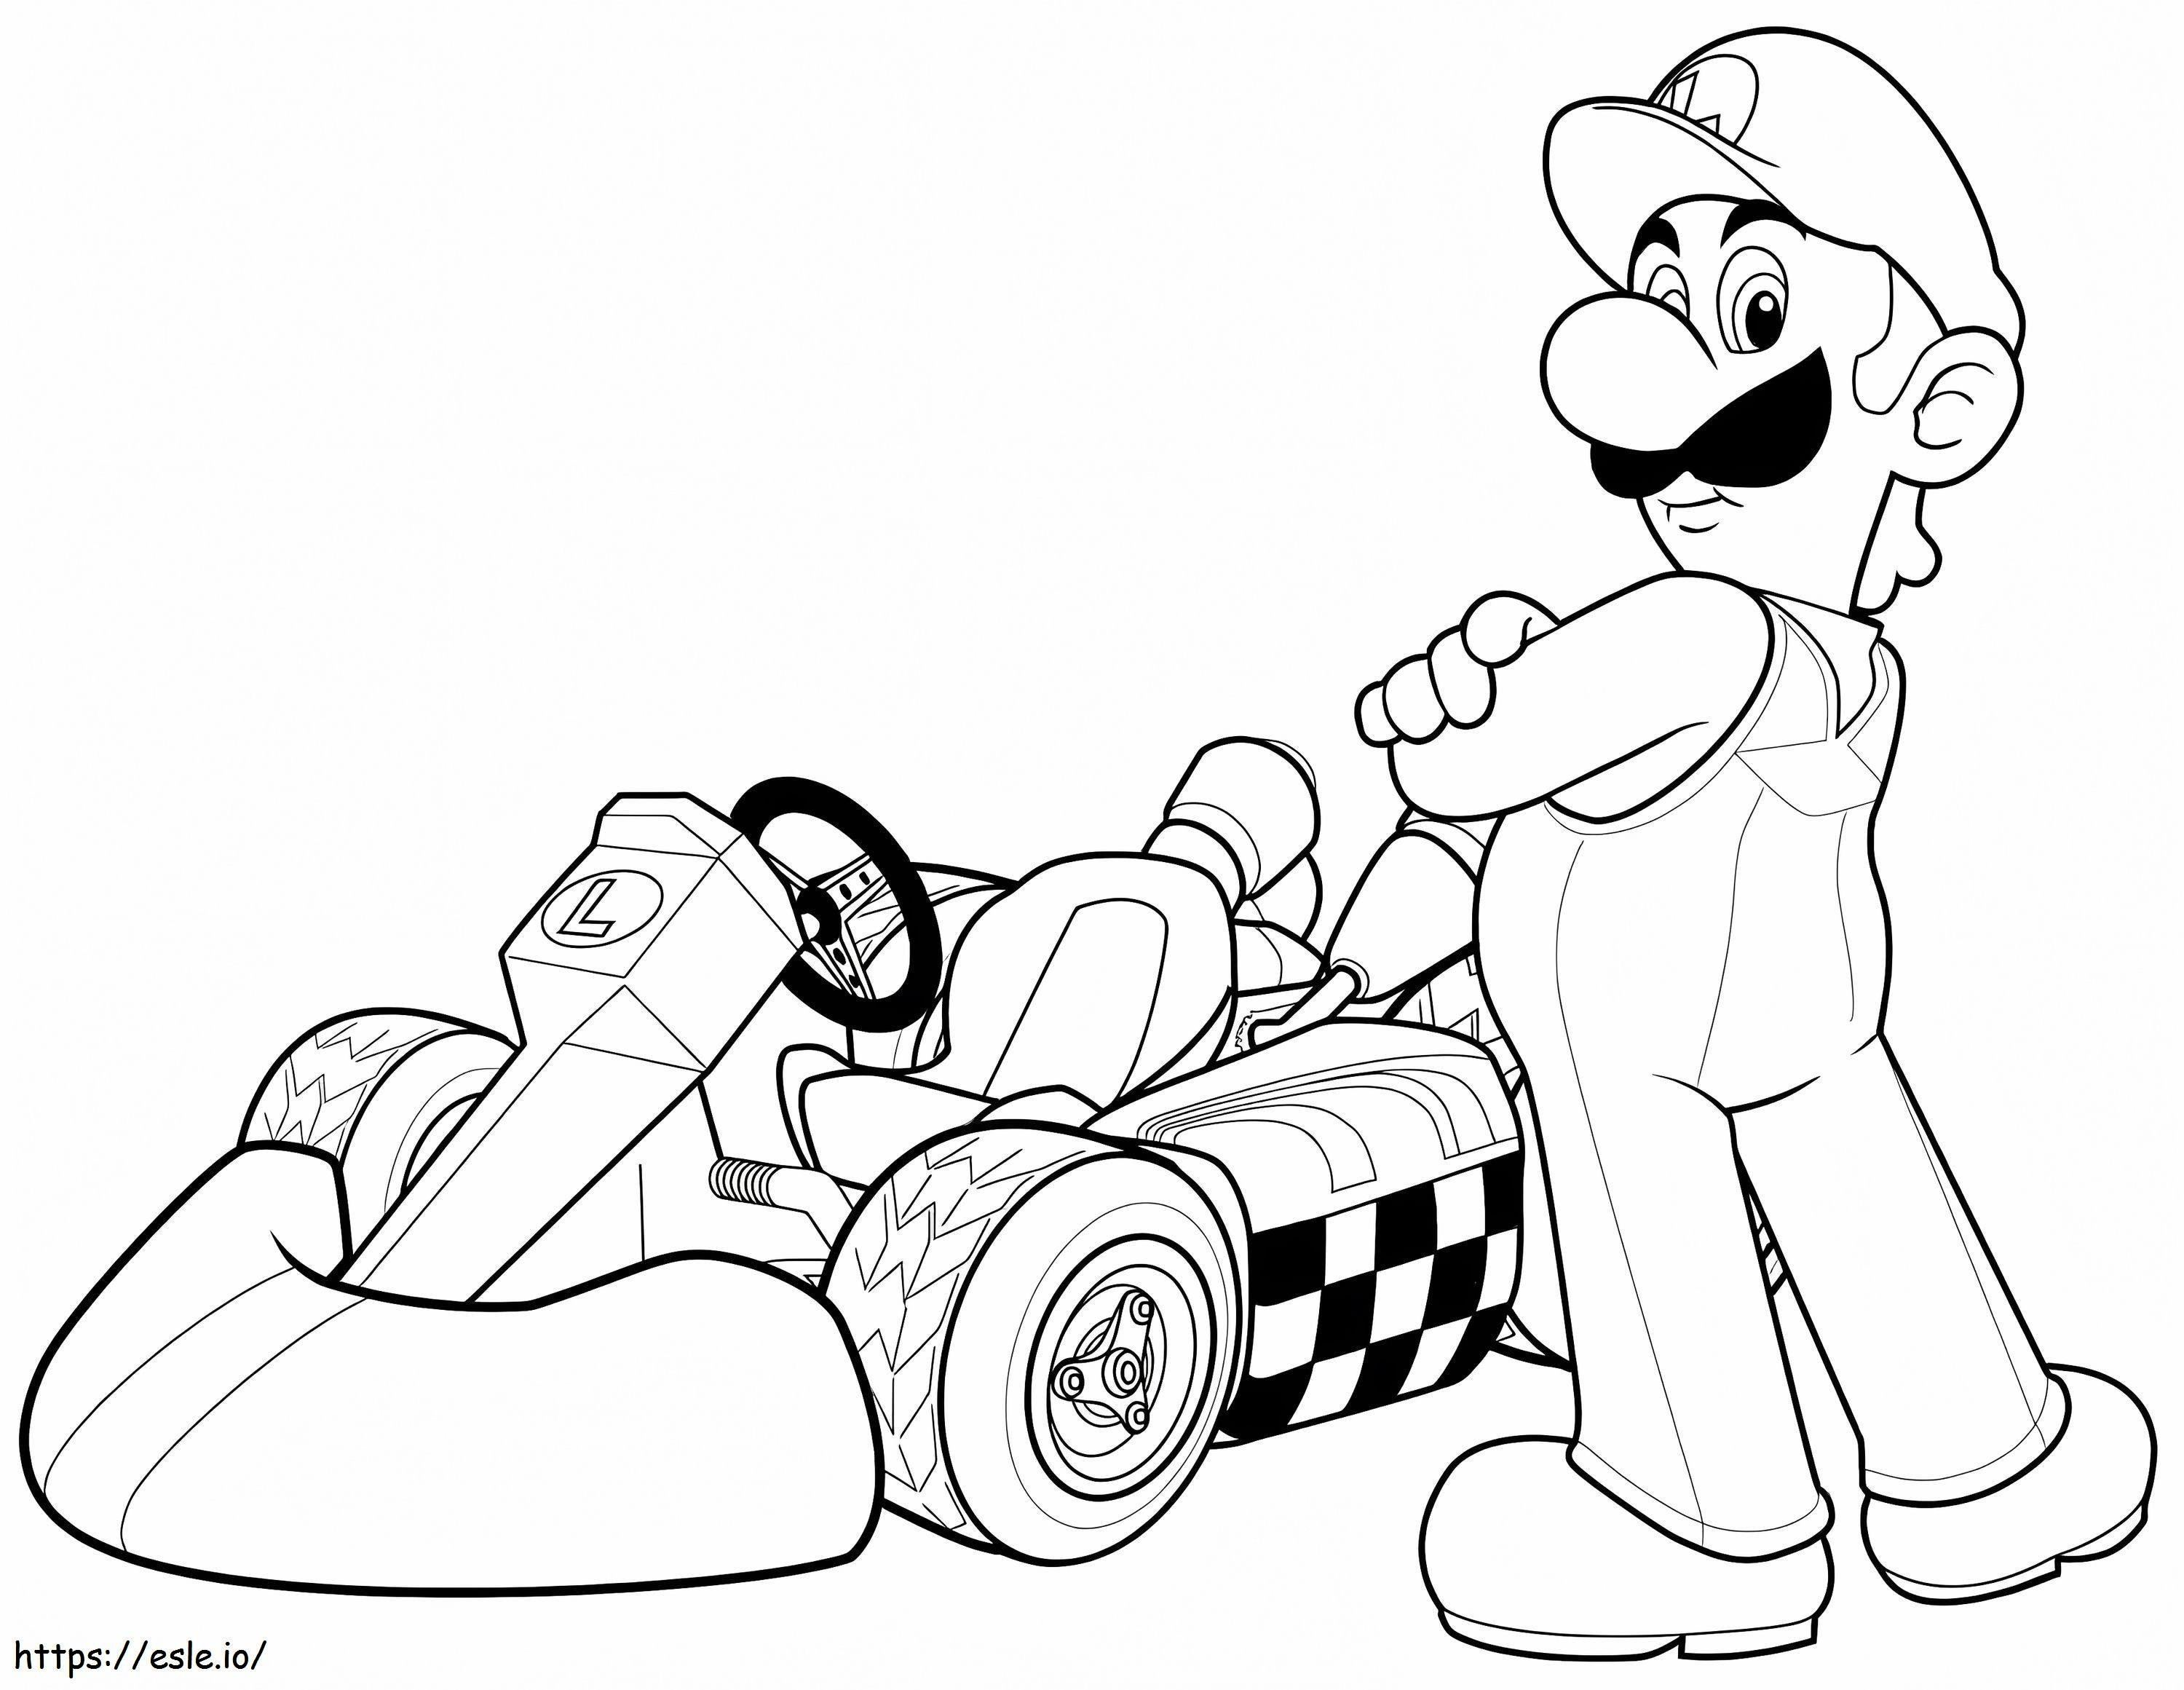 Coloriage Luigi et Mario Kart Wii à imprimer dessin